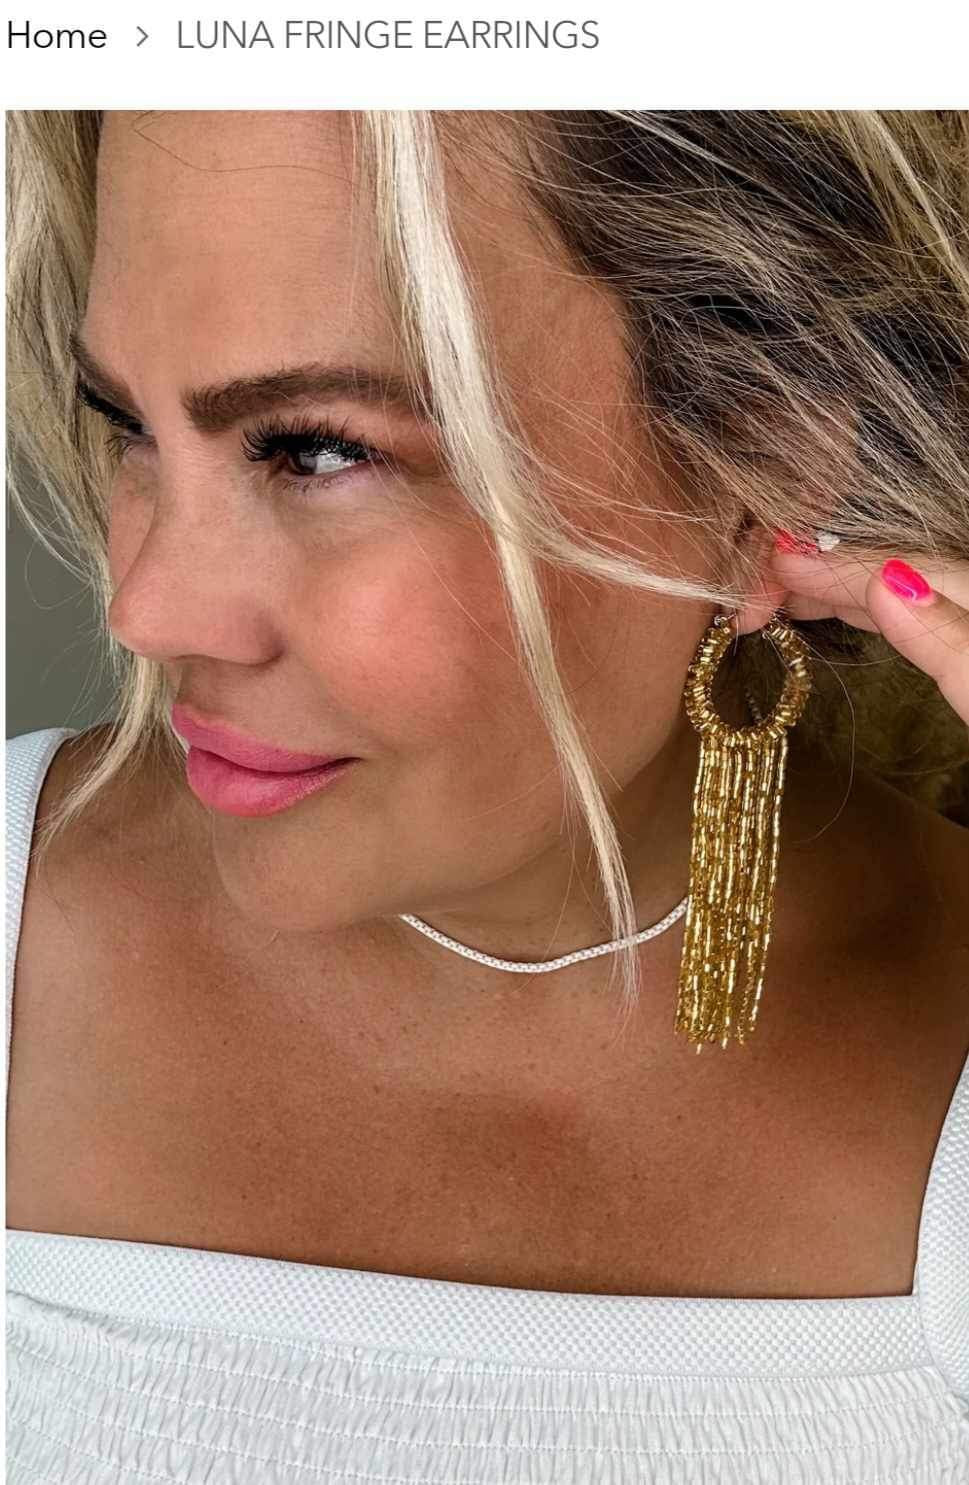 Luna Fringe Earrings